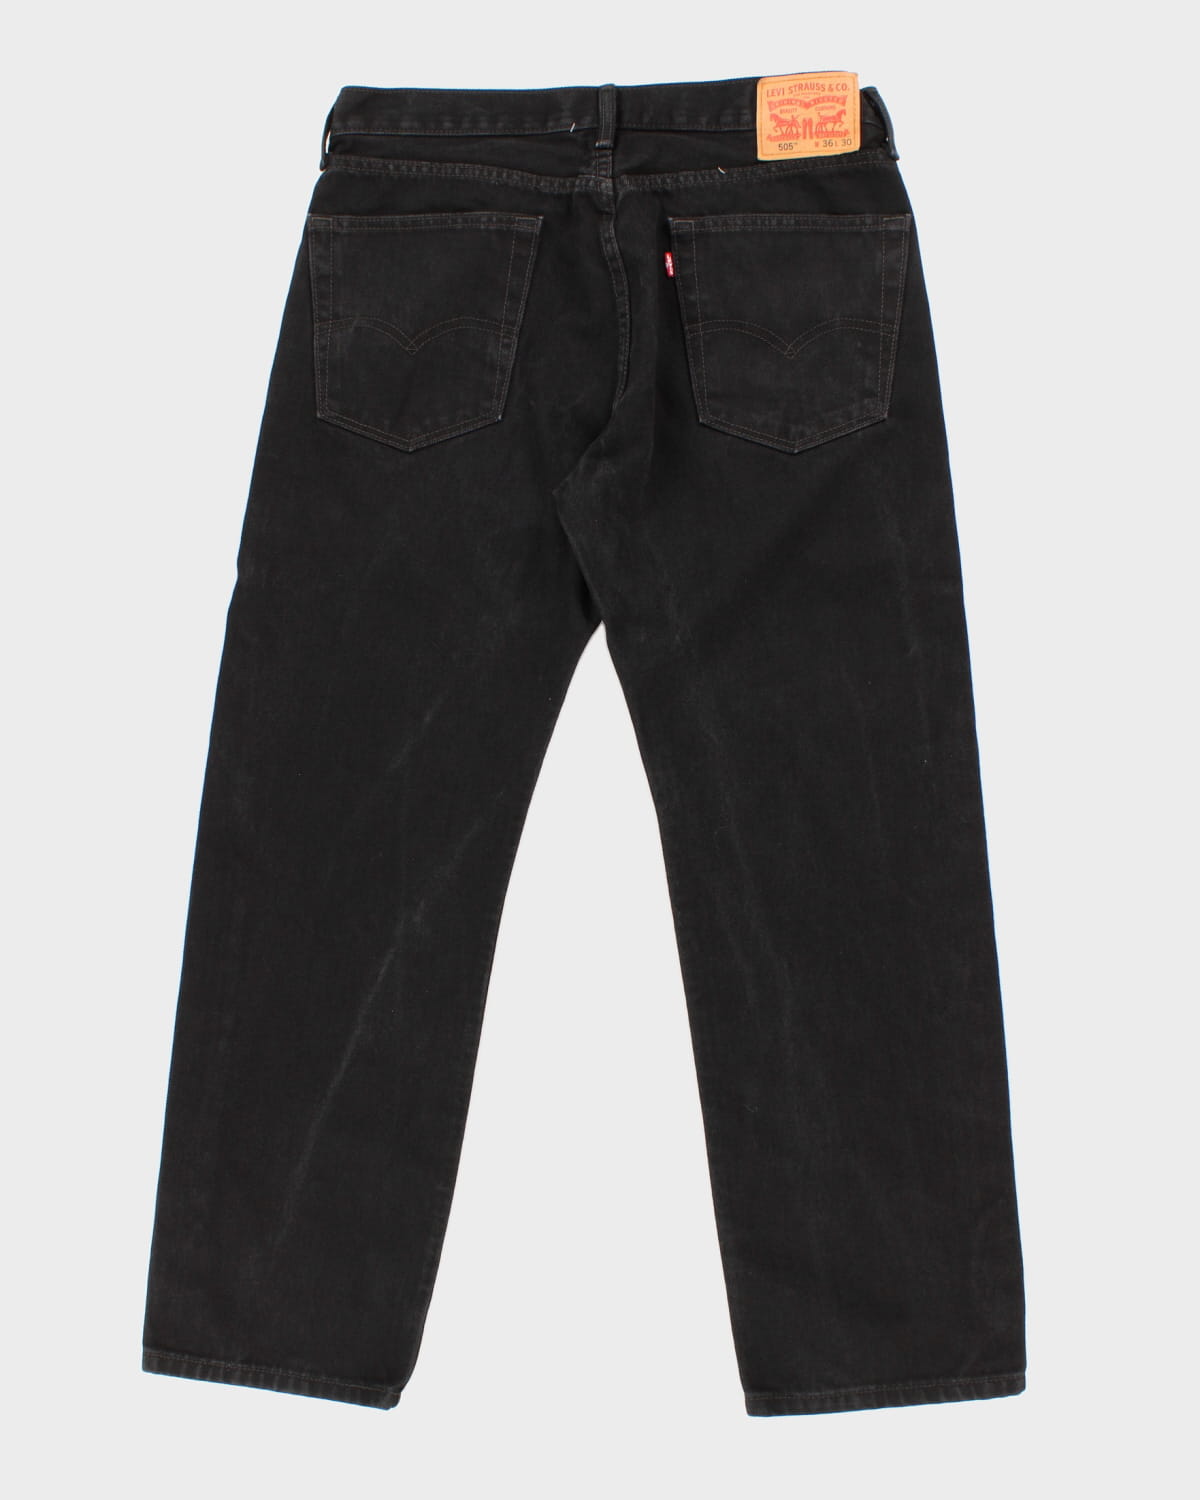 Levi's 505 Black Denim Jeans - W36 L32